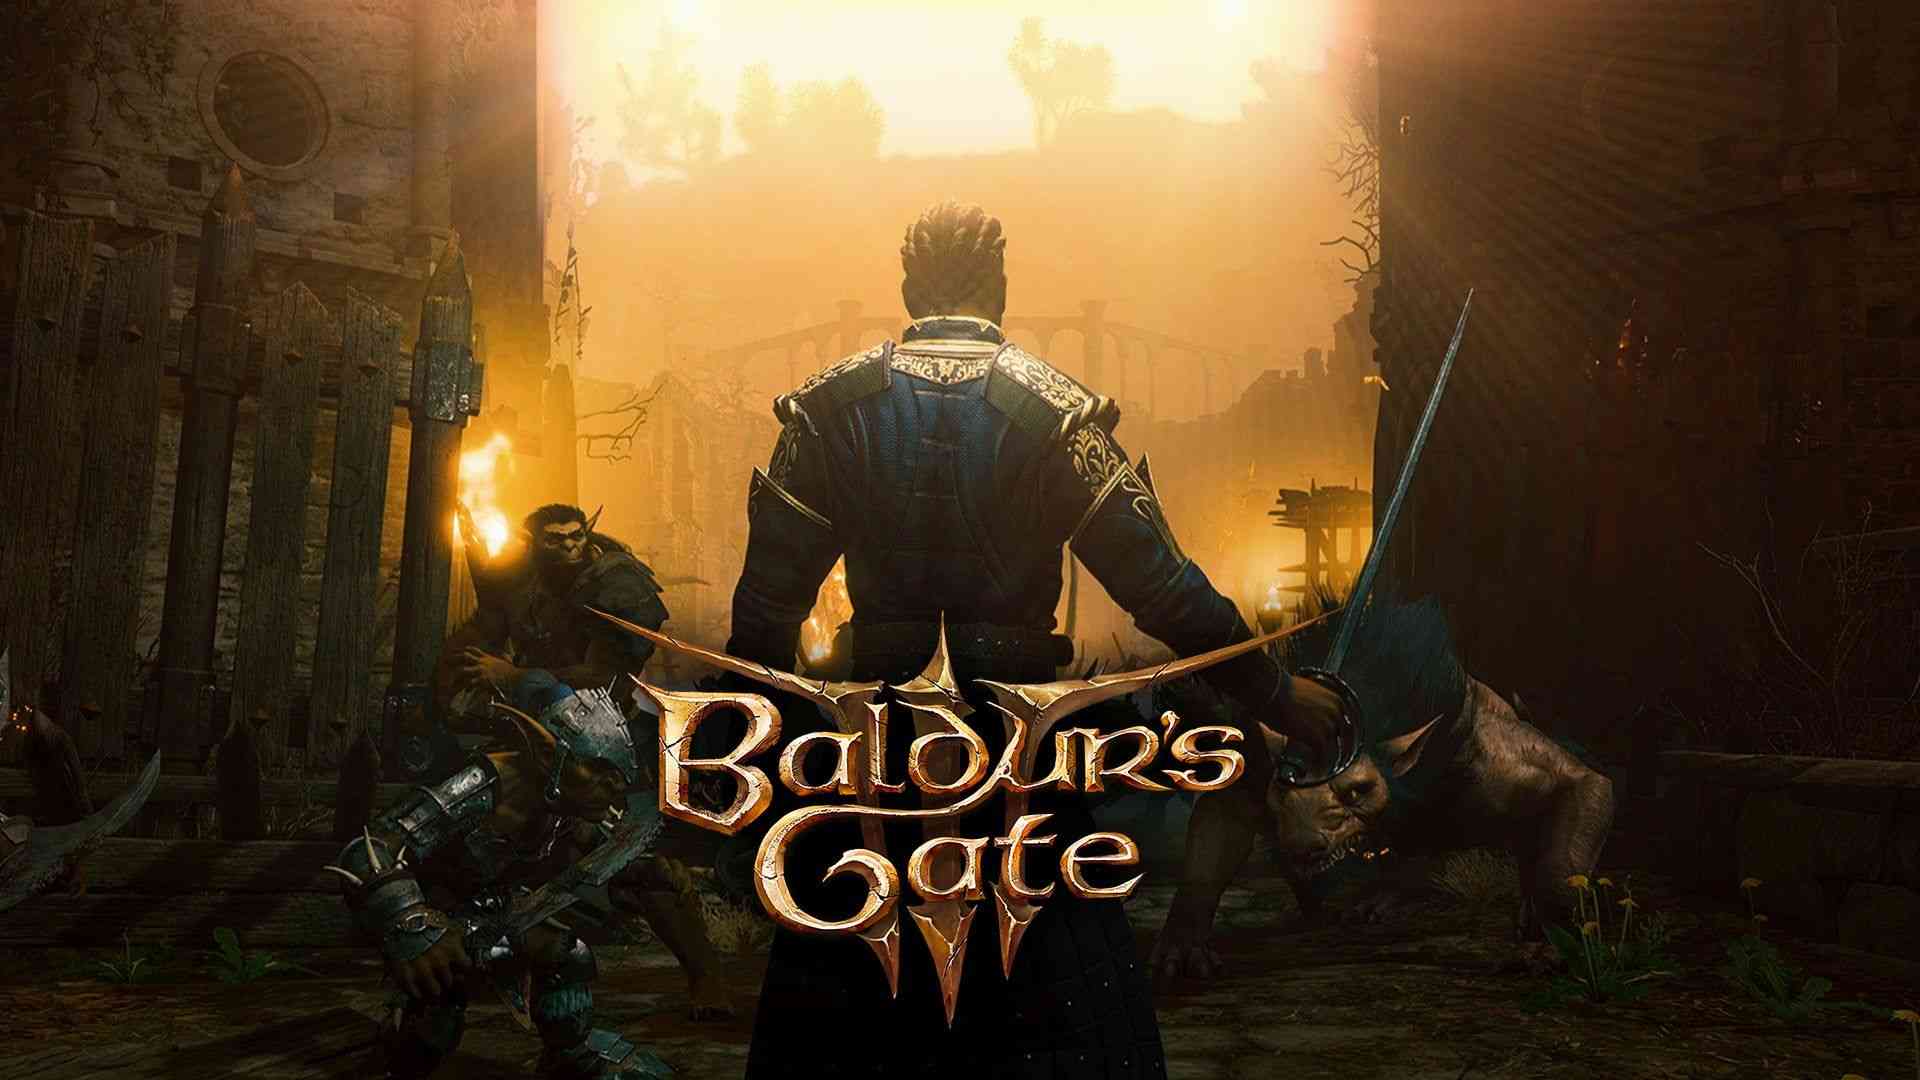 baldurs gate 3 gameplay revealed on d d live 4349 big 1